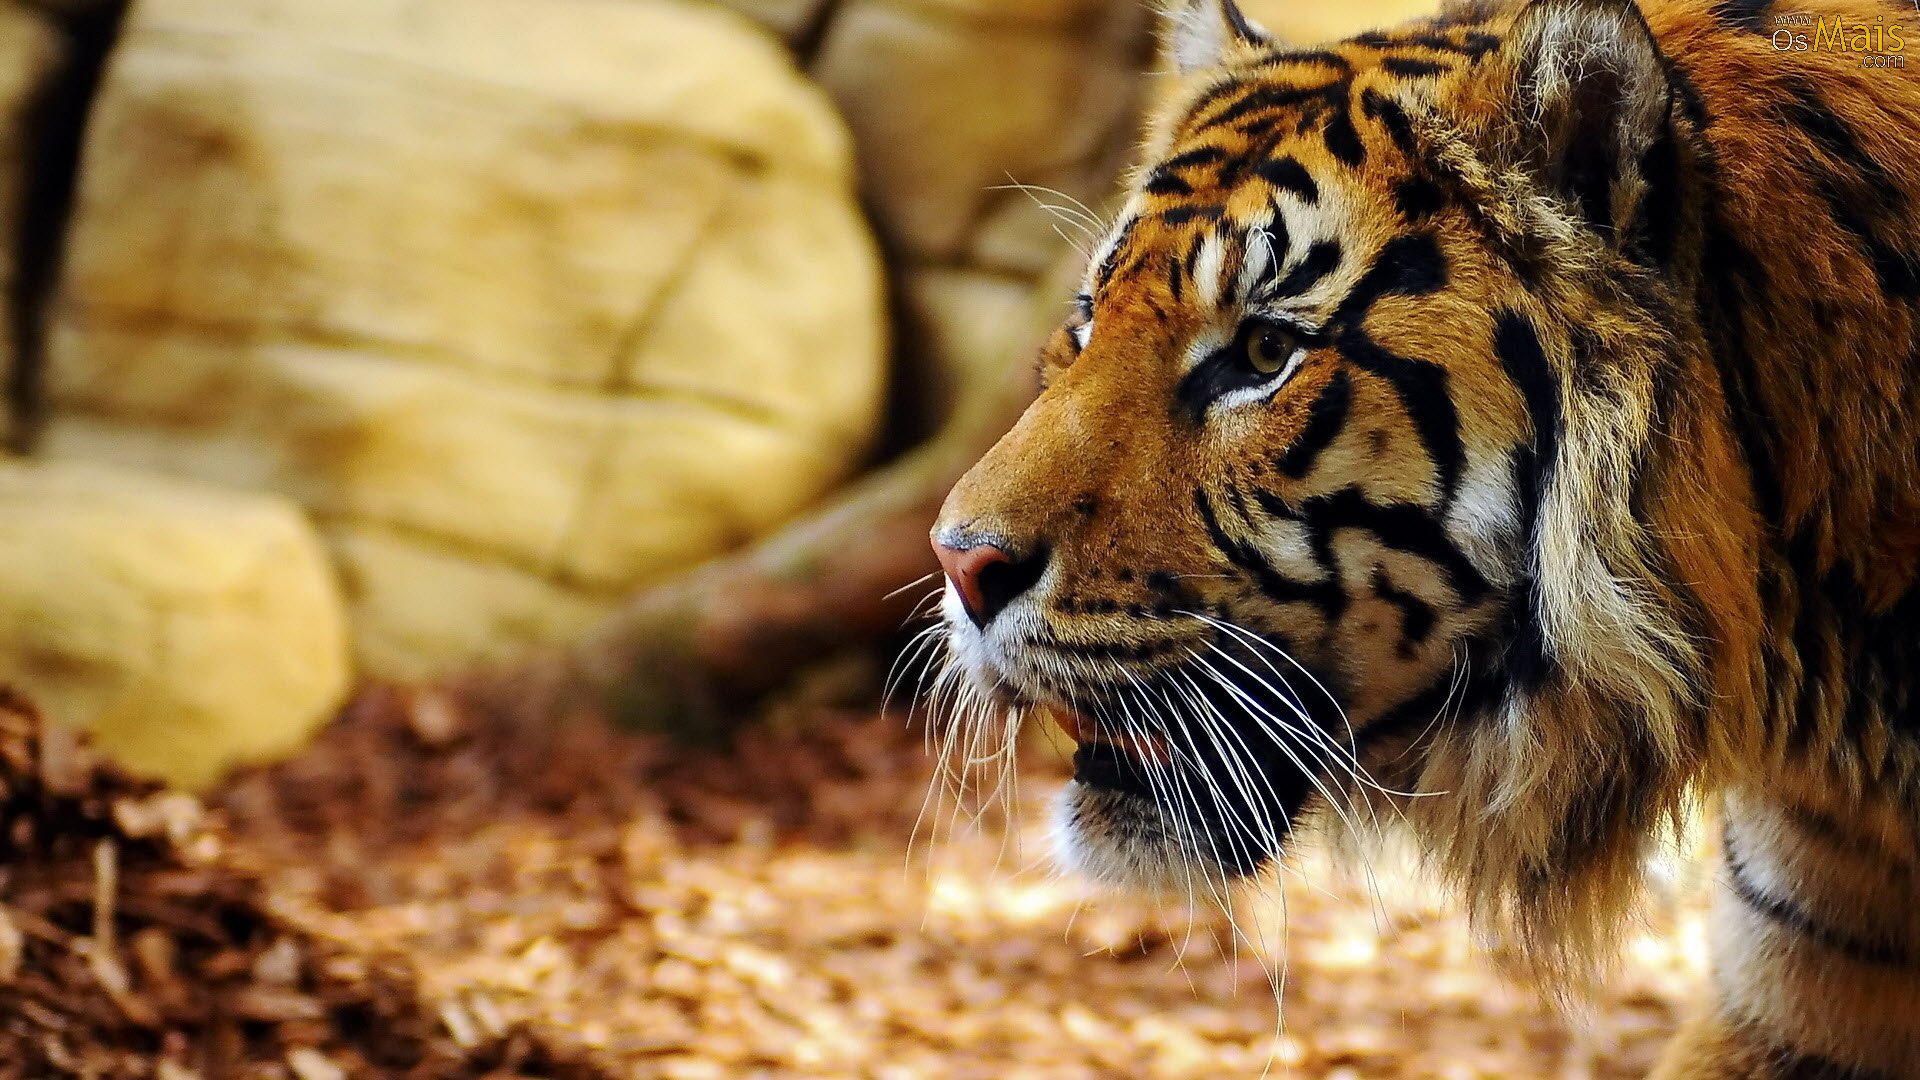 tigre wallpaper,tiger,wildlife,mammal,vertebrate,terrestrial animal